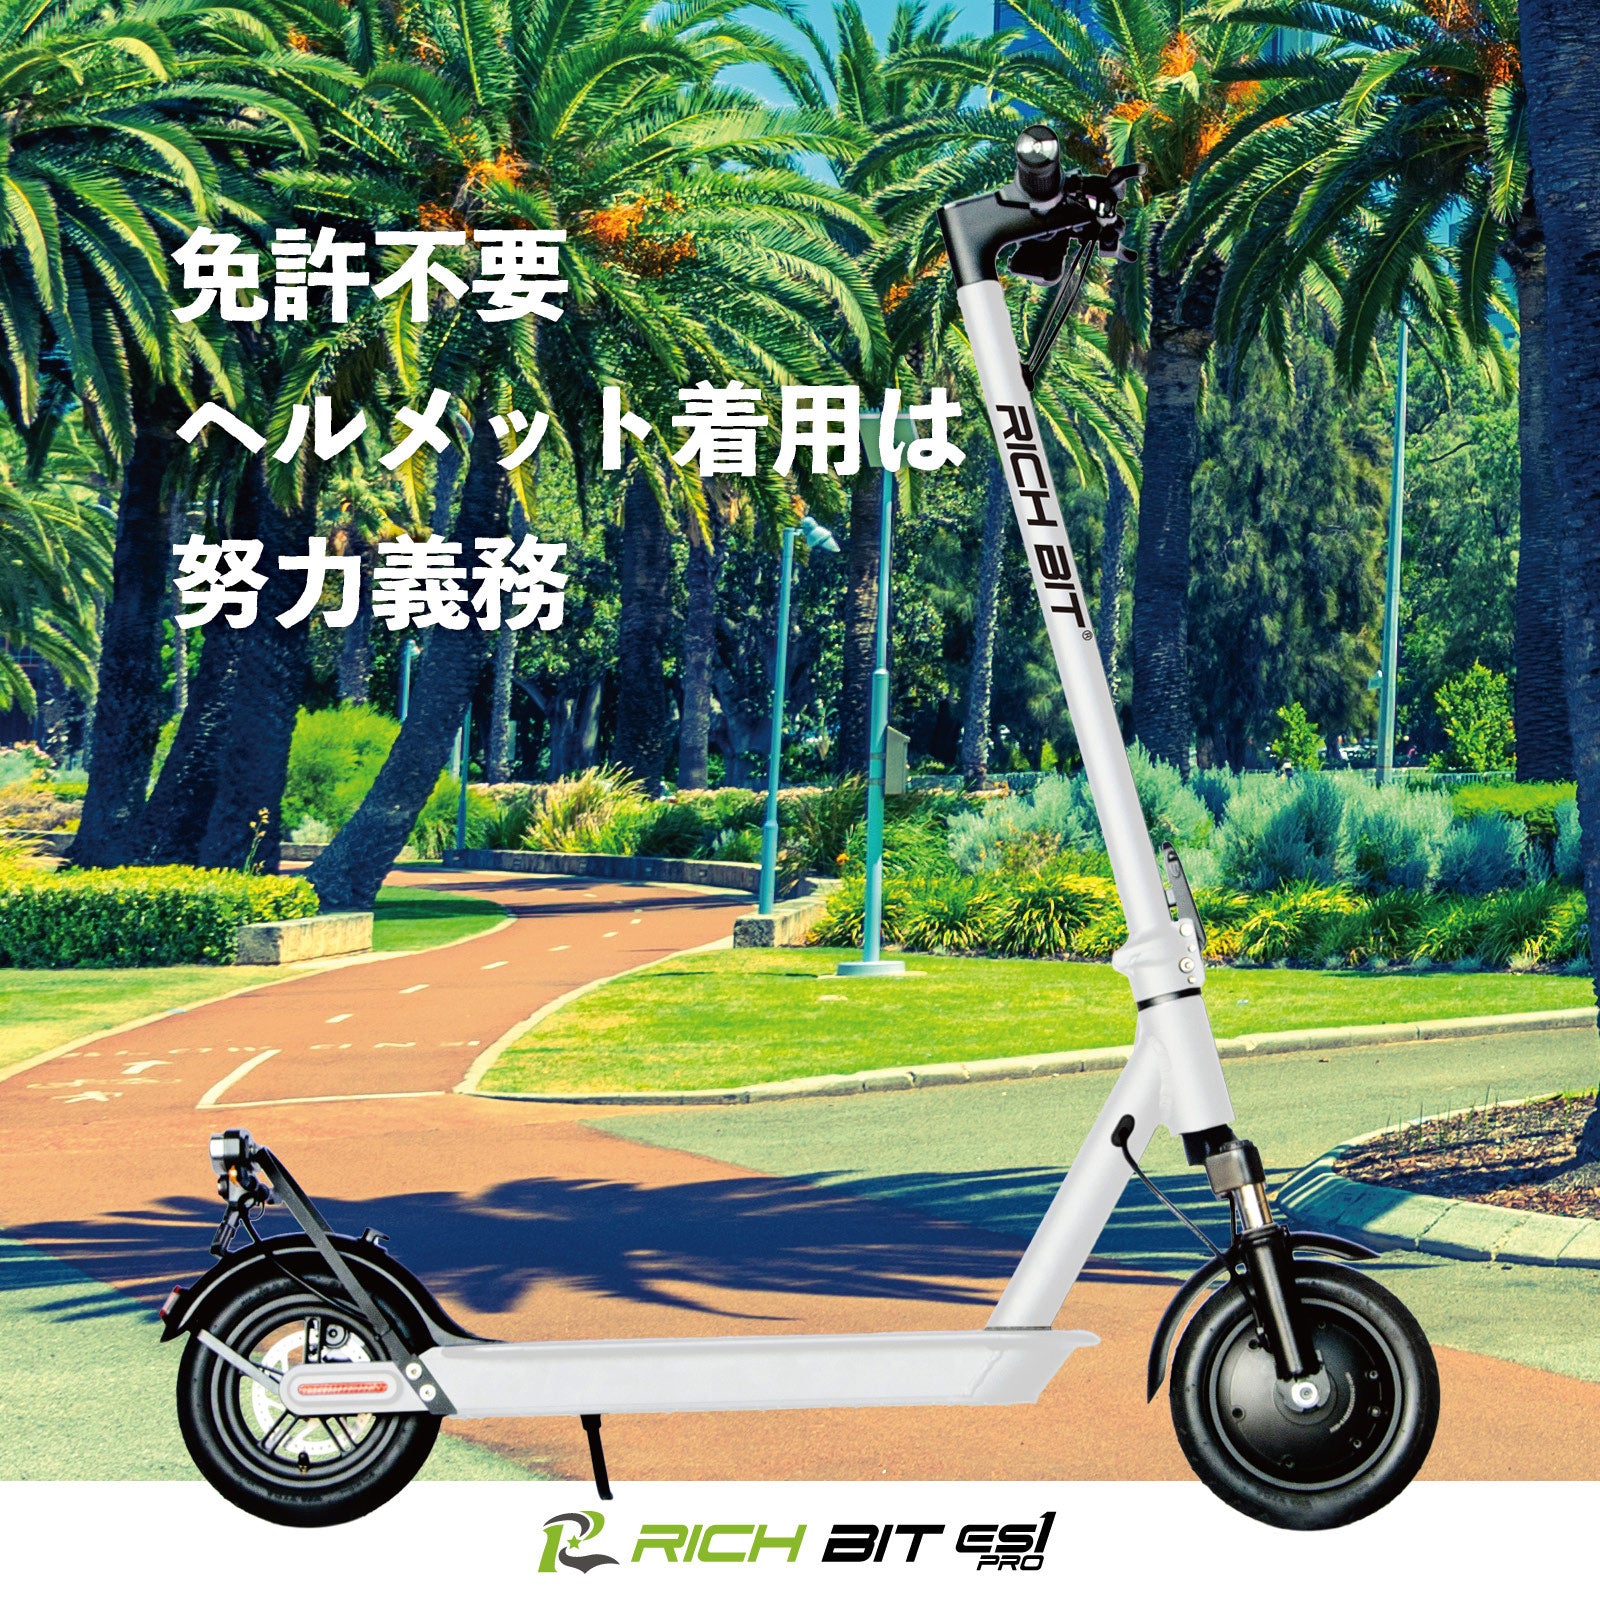 RICHBIT ES1 Pro☆特定小型原動機付自転車モデル【ホワイト】電動 